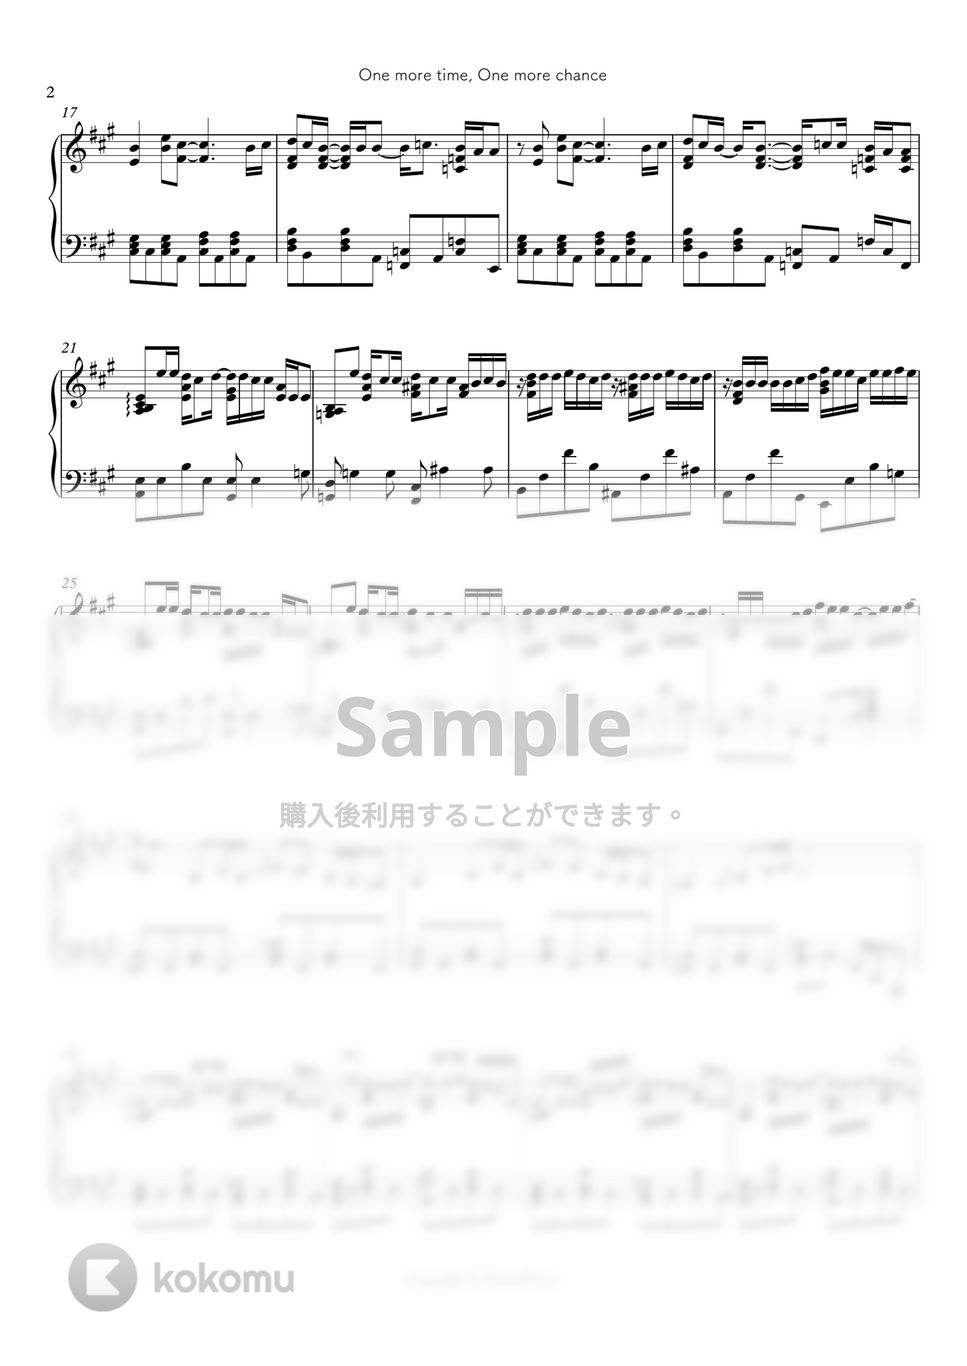 秒速５センチメートル - One more time, One more chance by シビウォルピアノ